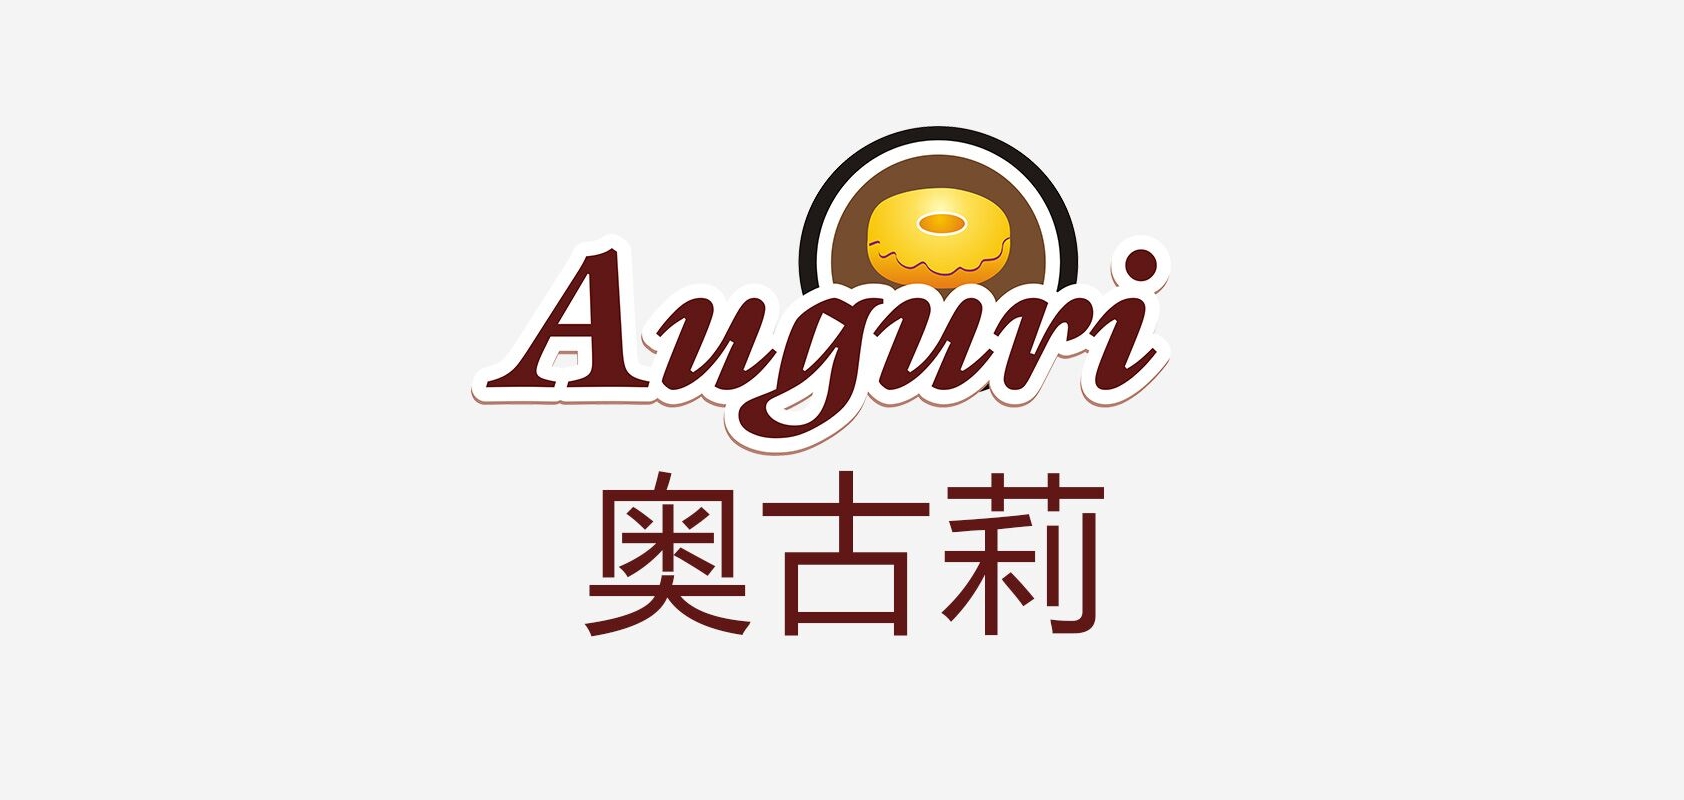 auguri是什么牌子_auguri品牌怎么样?